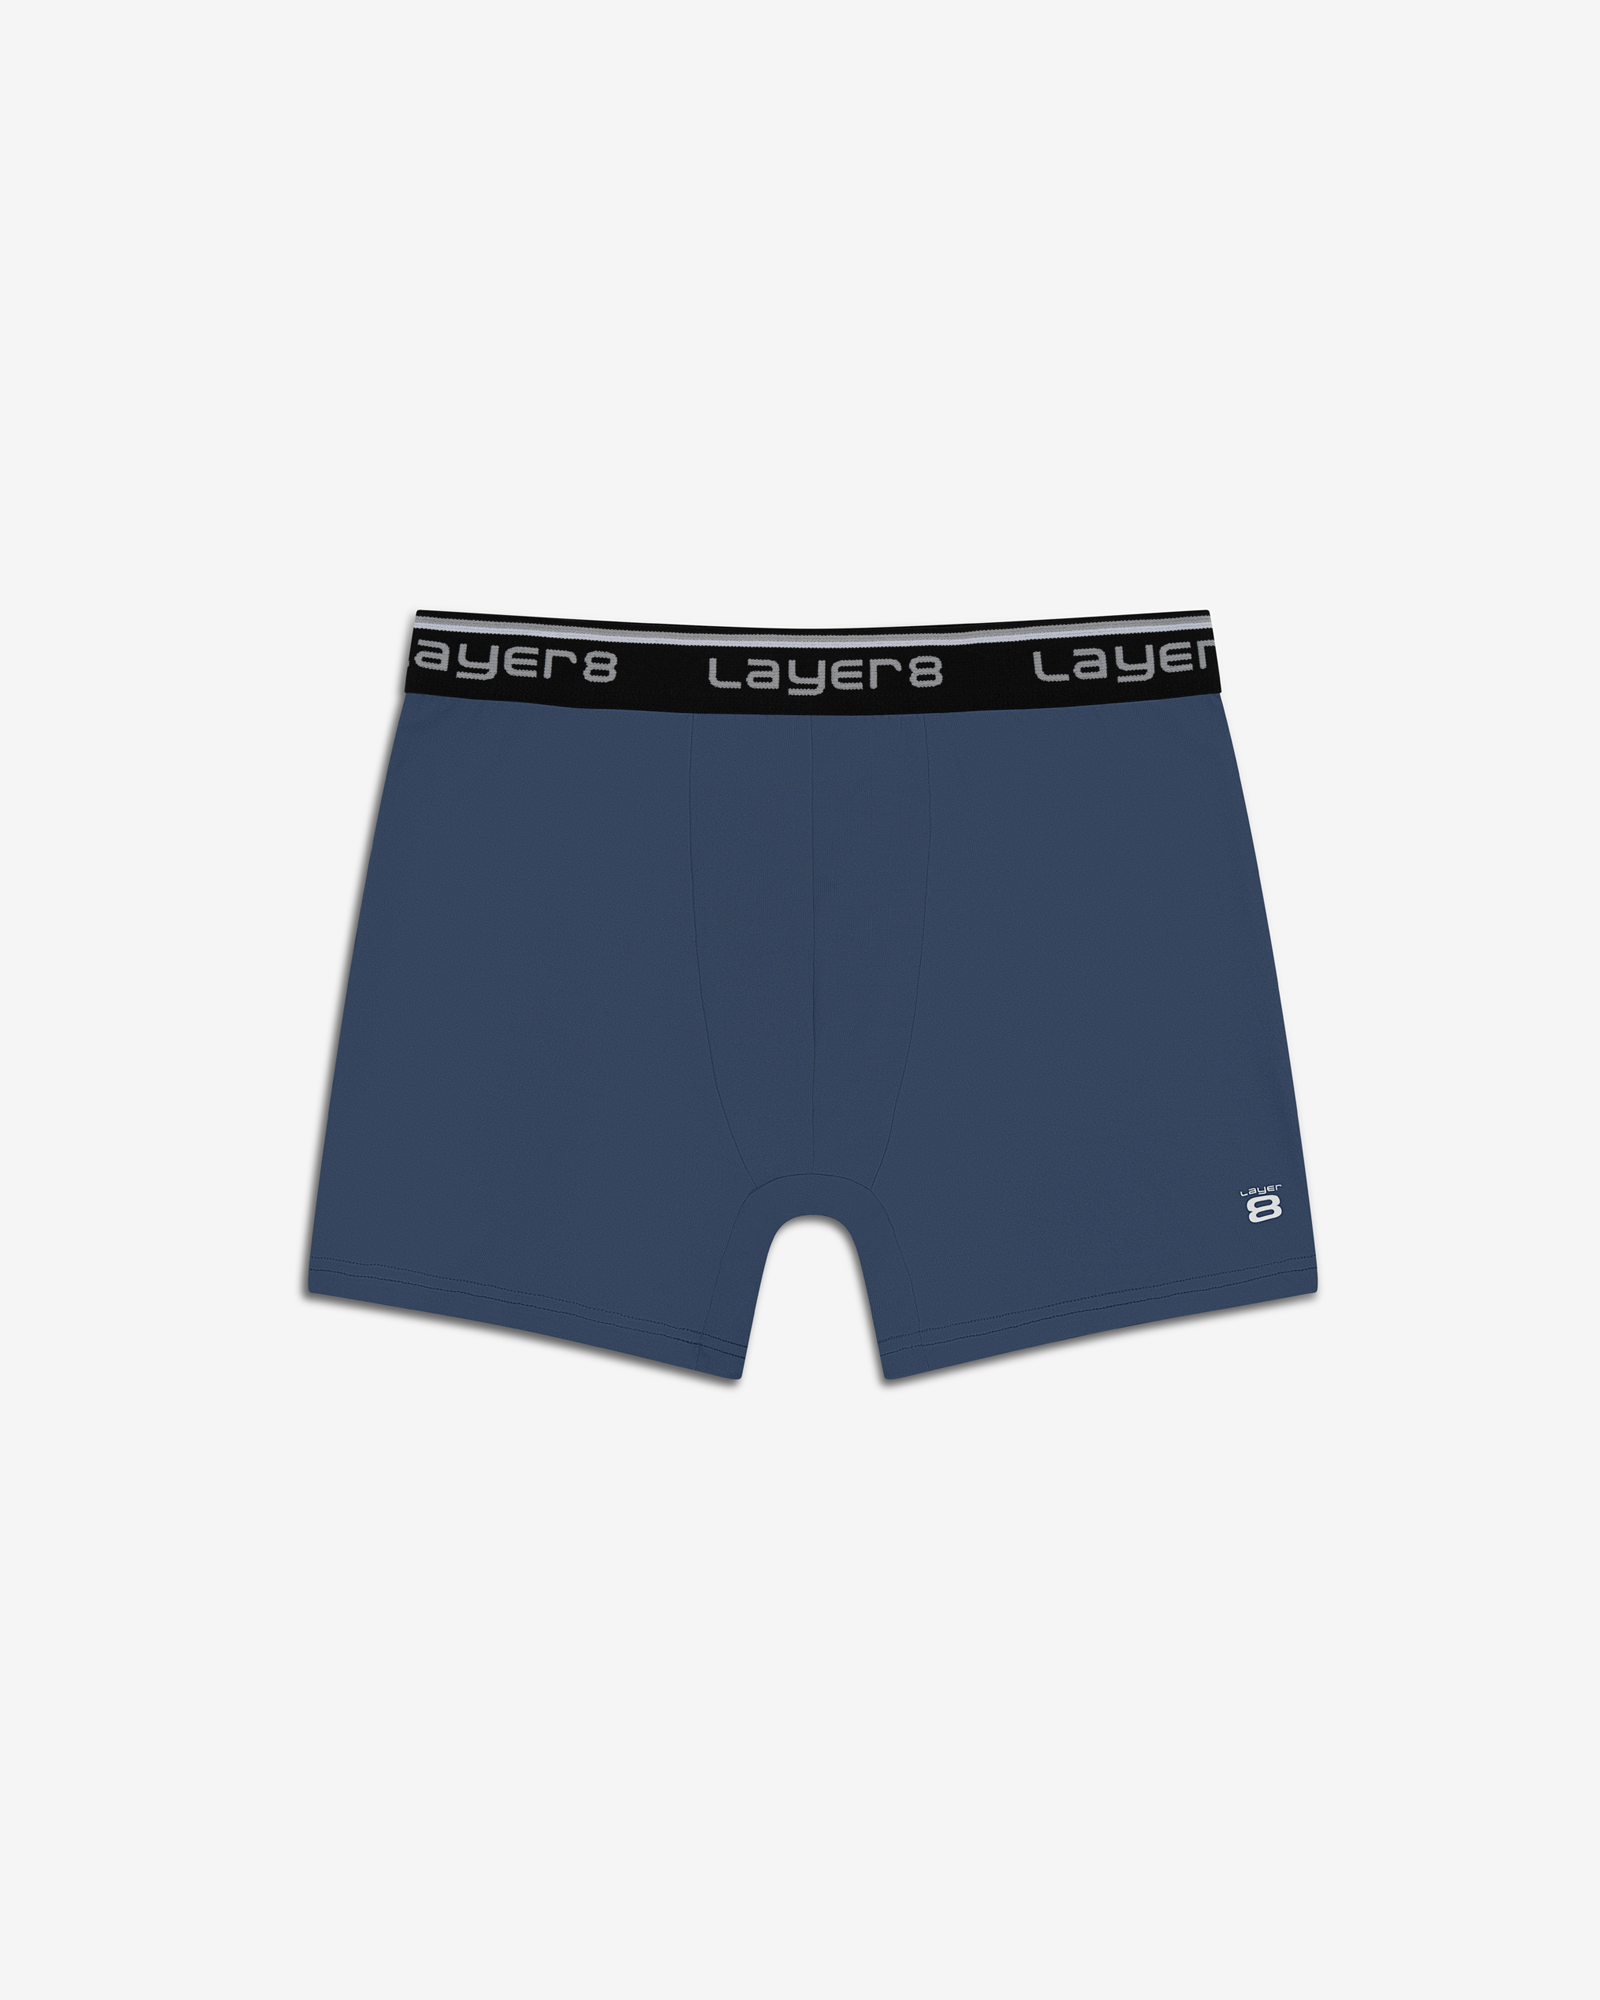 Men's Underwear Layer 8 for sale